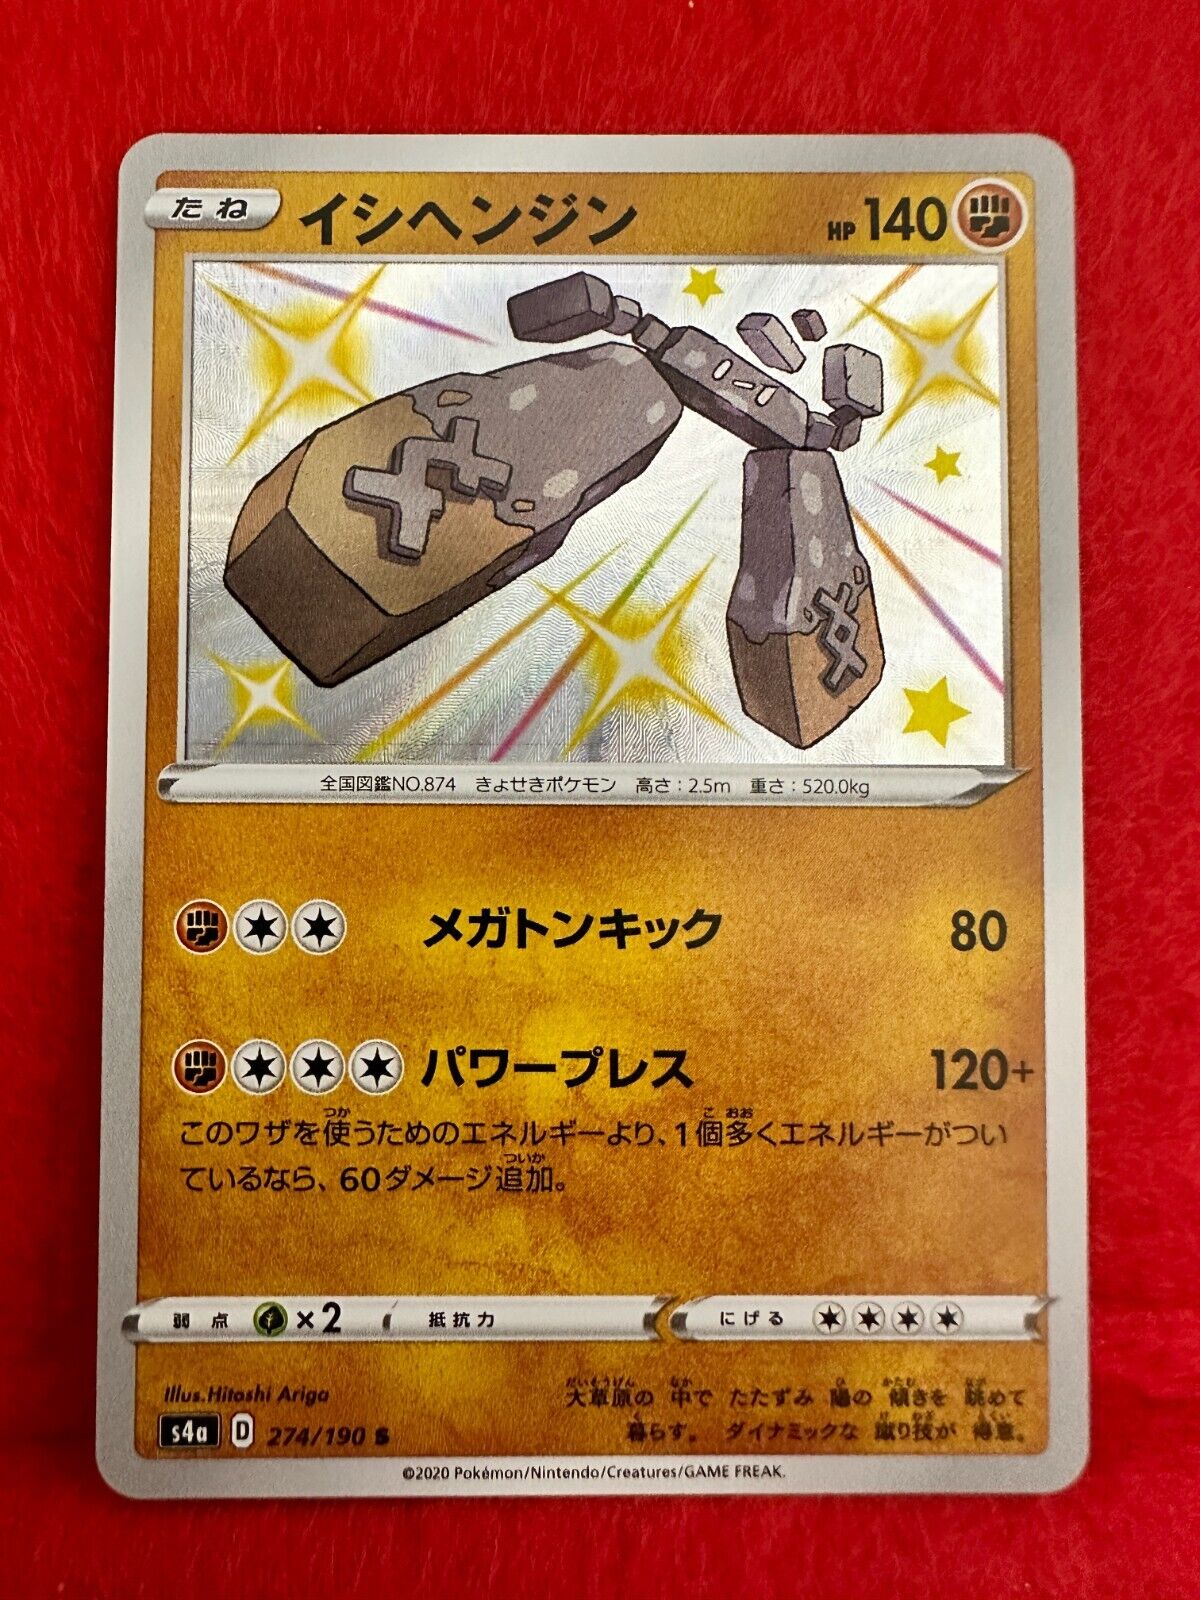 Stonjourner 274/190, S4a Shiny Star V - Pokemon, Japanese, NM